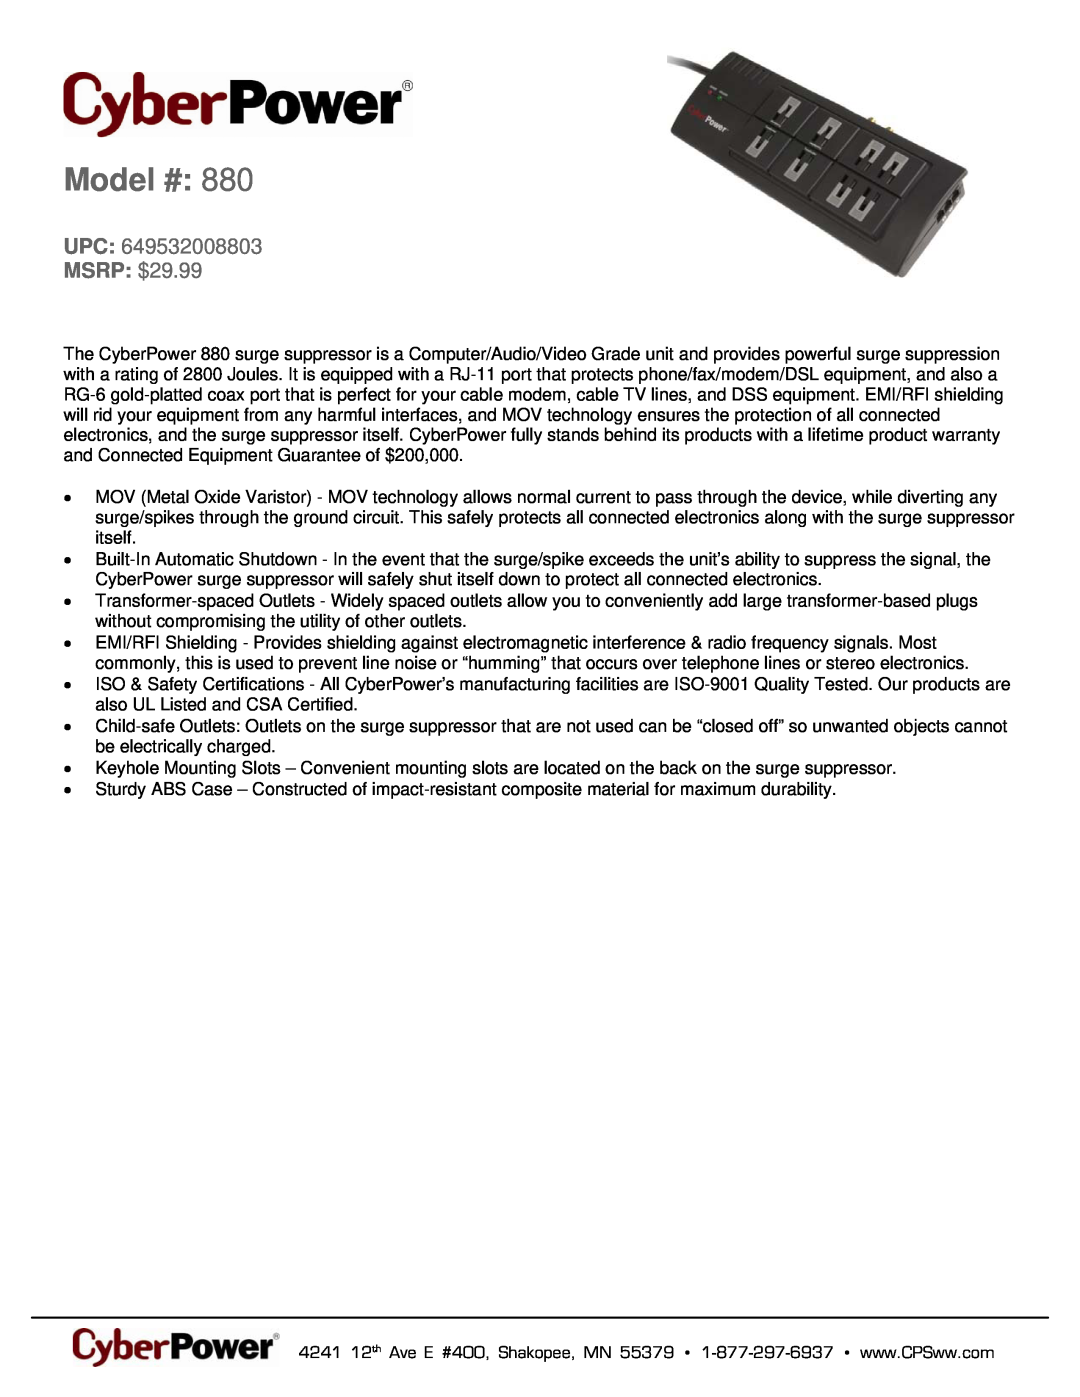 CyberPower Systems 649532008803 warranty Model #, MSRP $29.99 